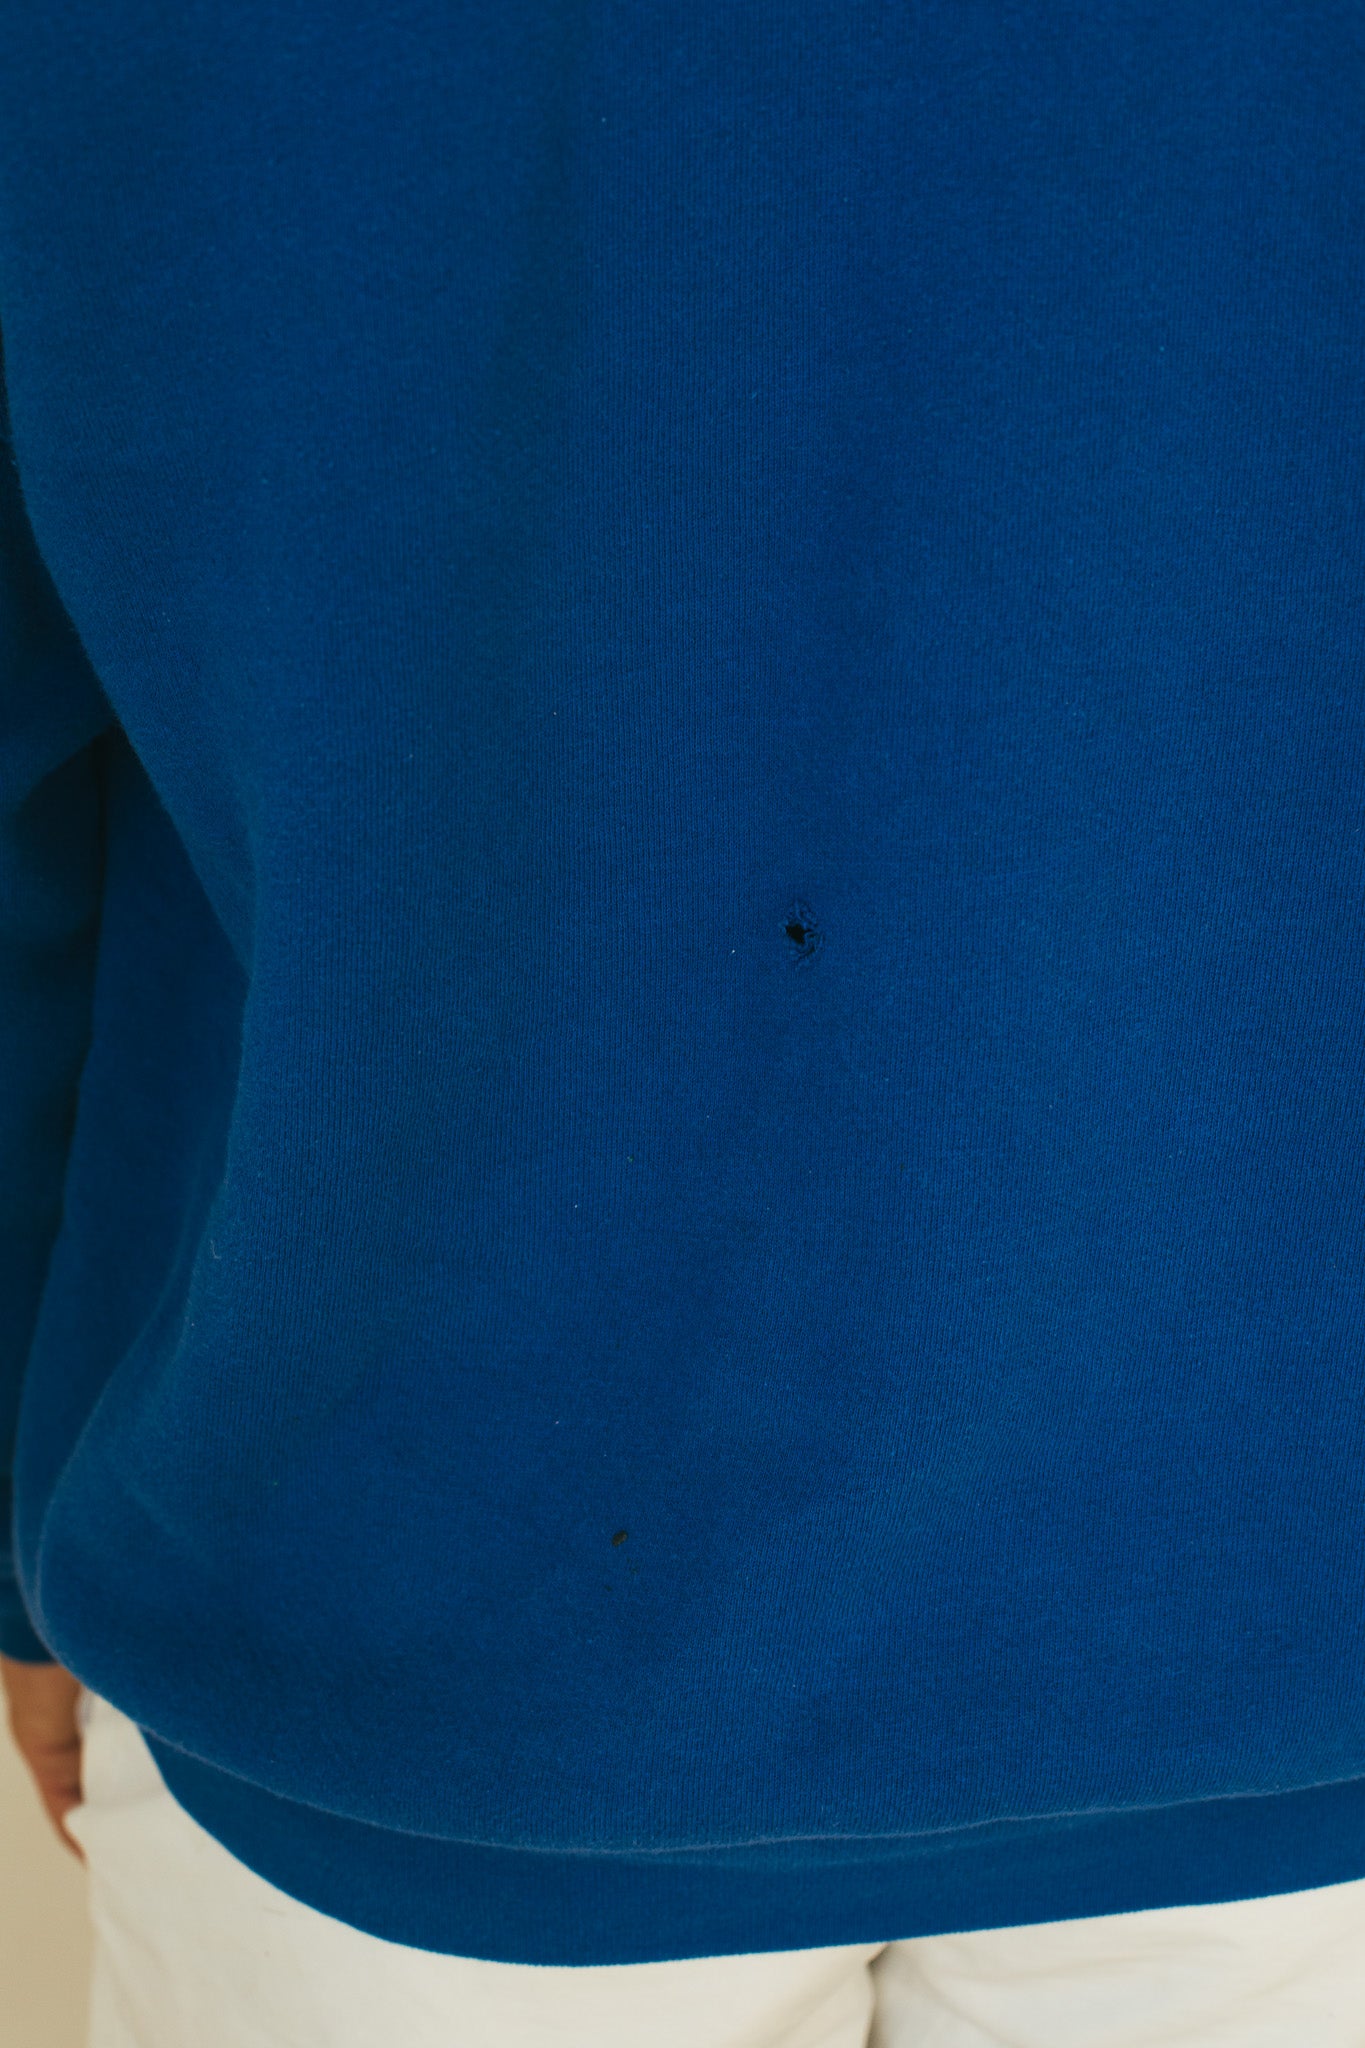 Believe in Blue X Colts  - Sweatshirt